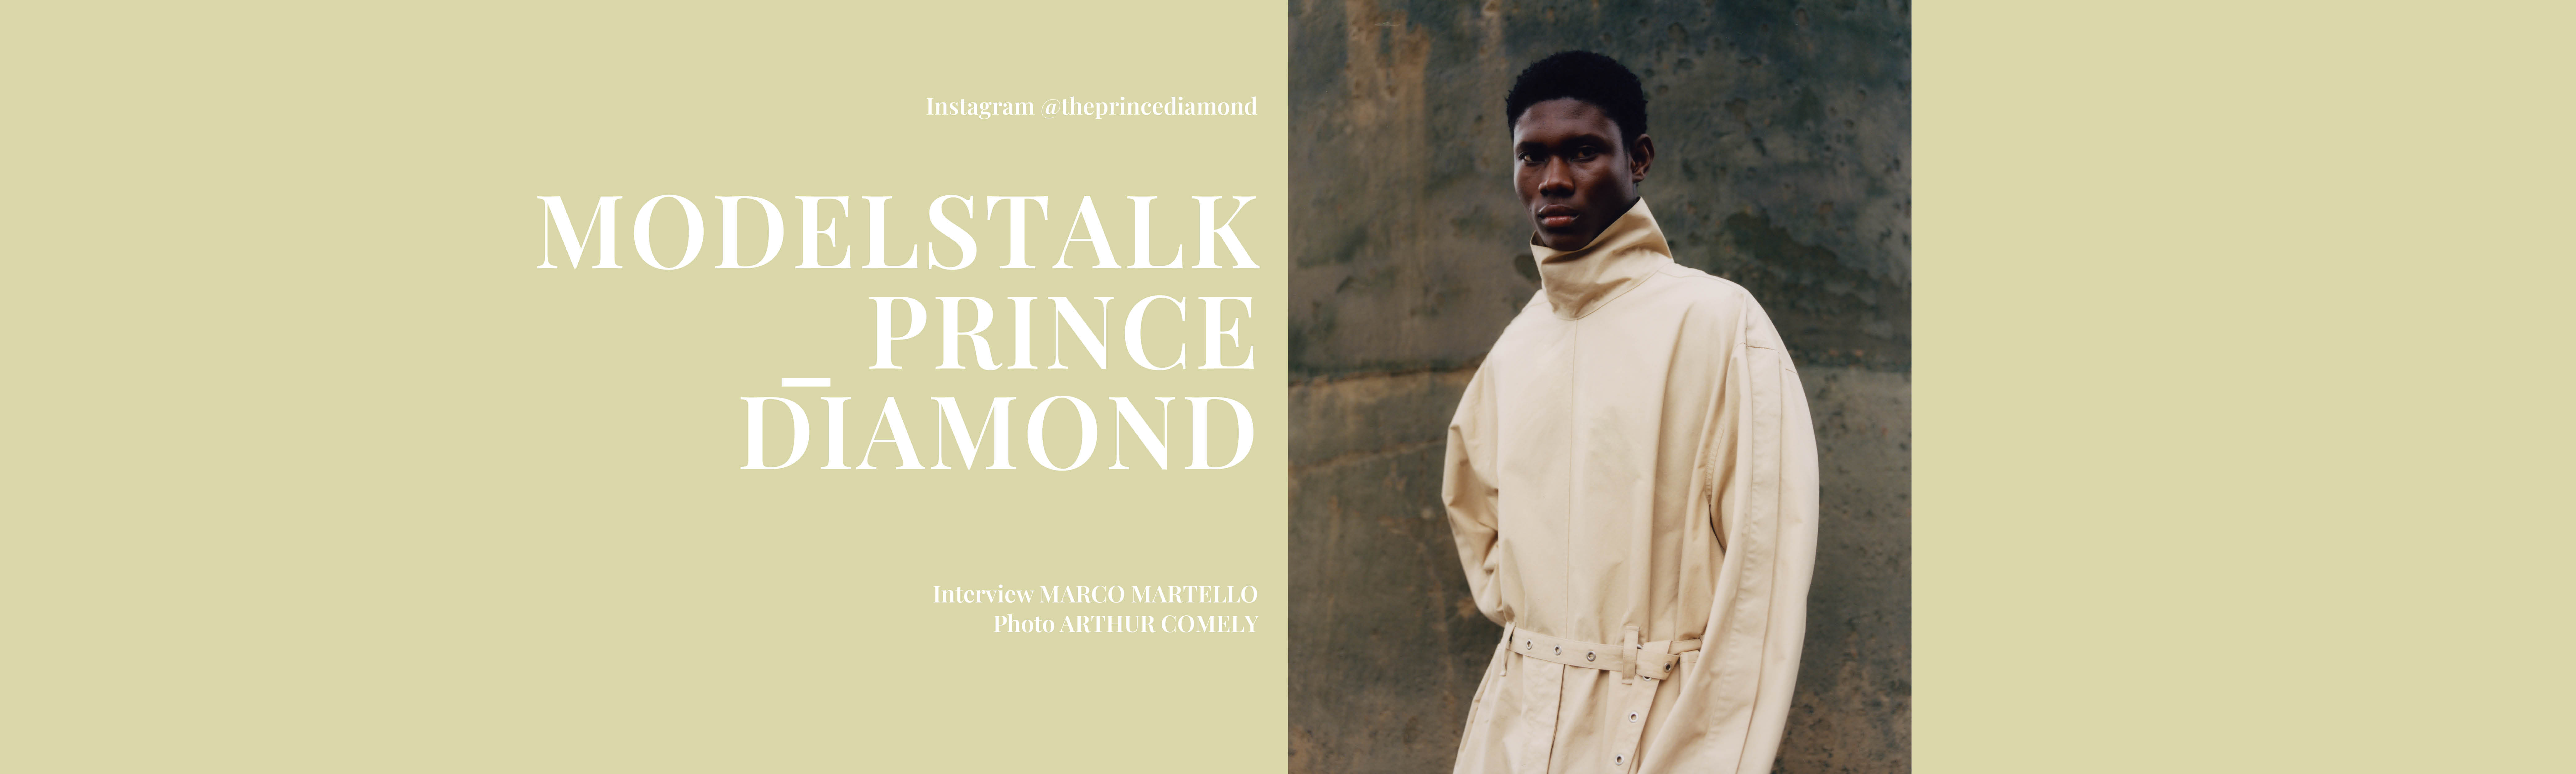 https://www.thegreatestmagazine.com/talking-heads-prince-diamond/